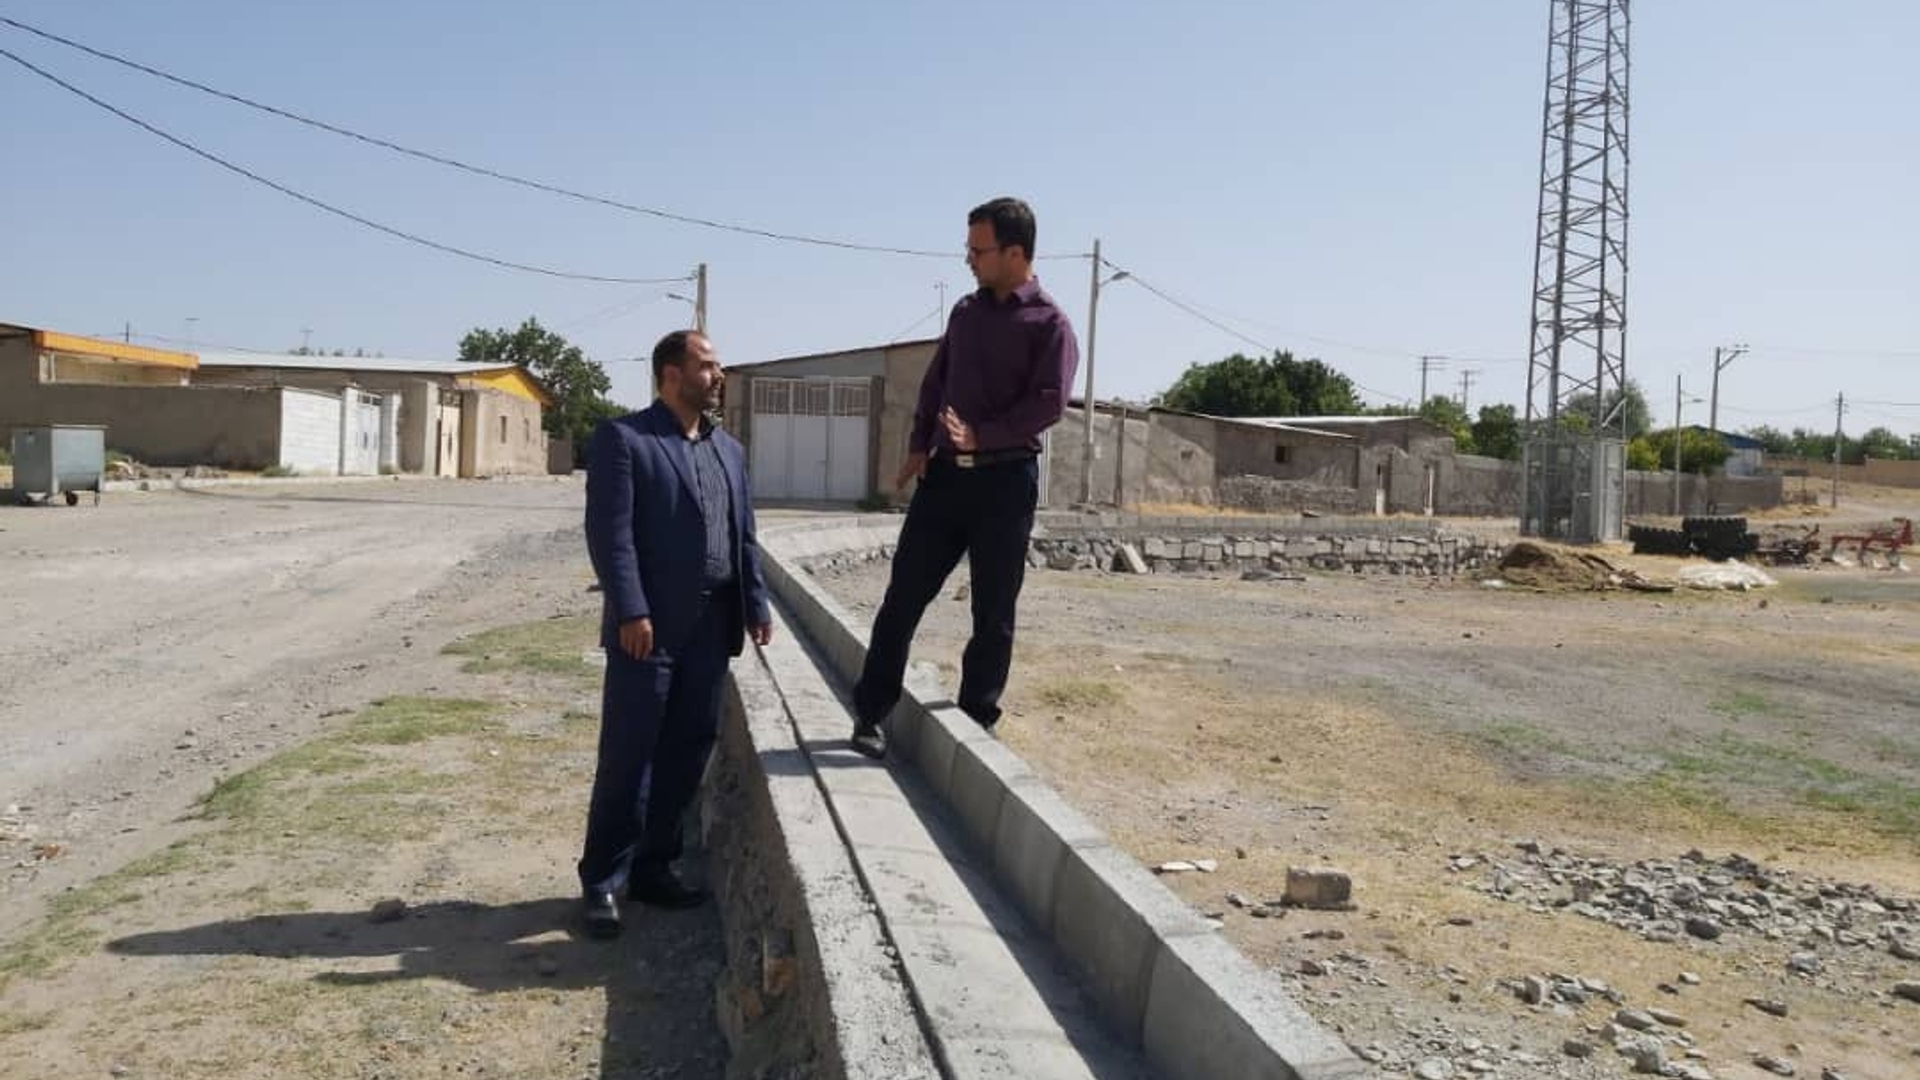 بررسی آخرین وضعیت پروژه های در دست اقدام در روستاهای تابعه بخش مرکزی آشتیان